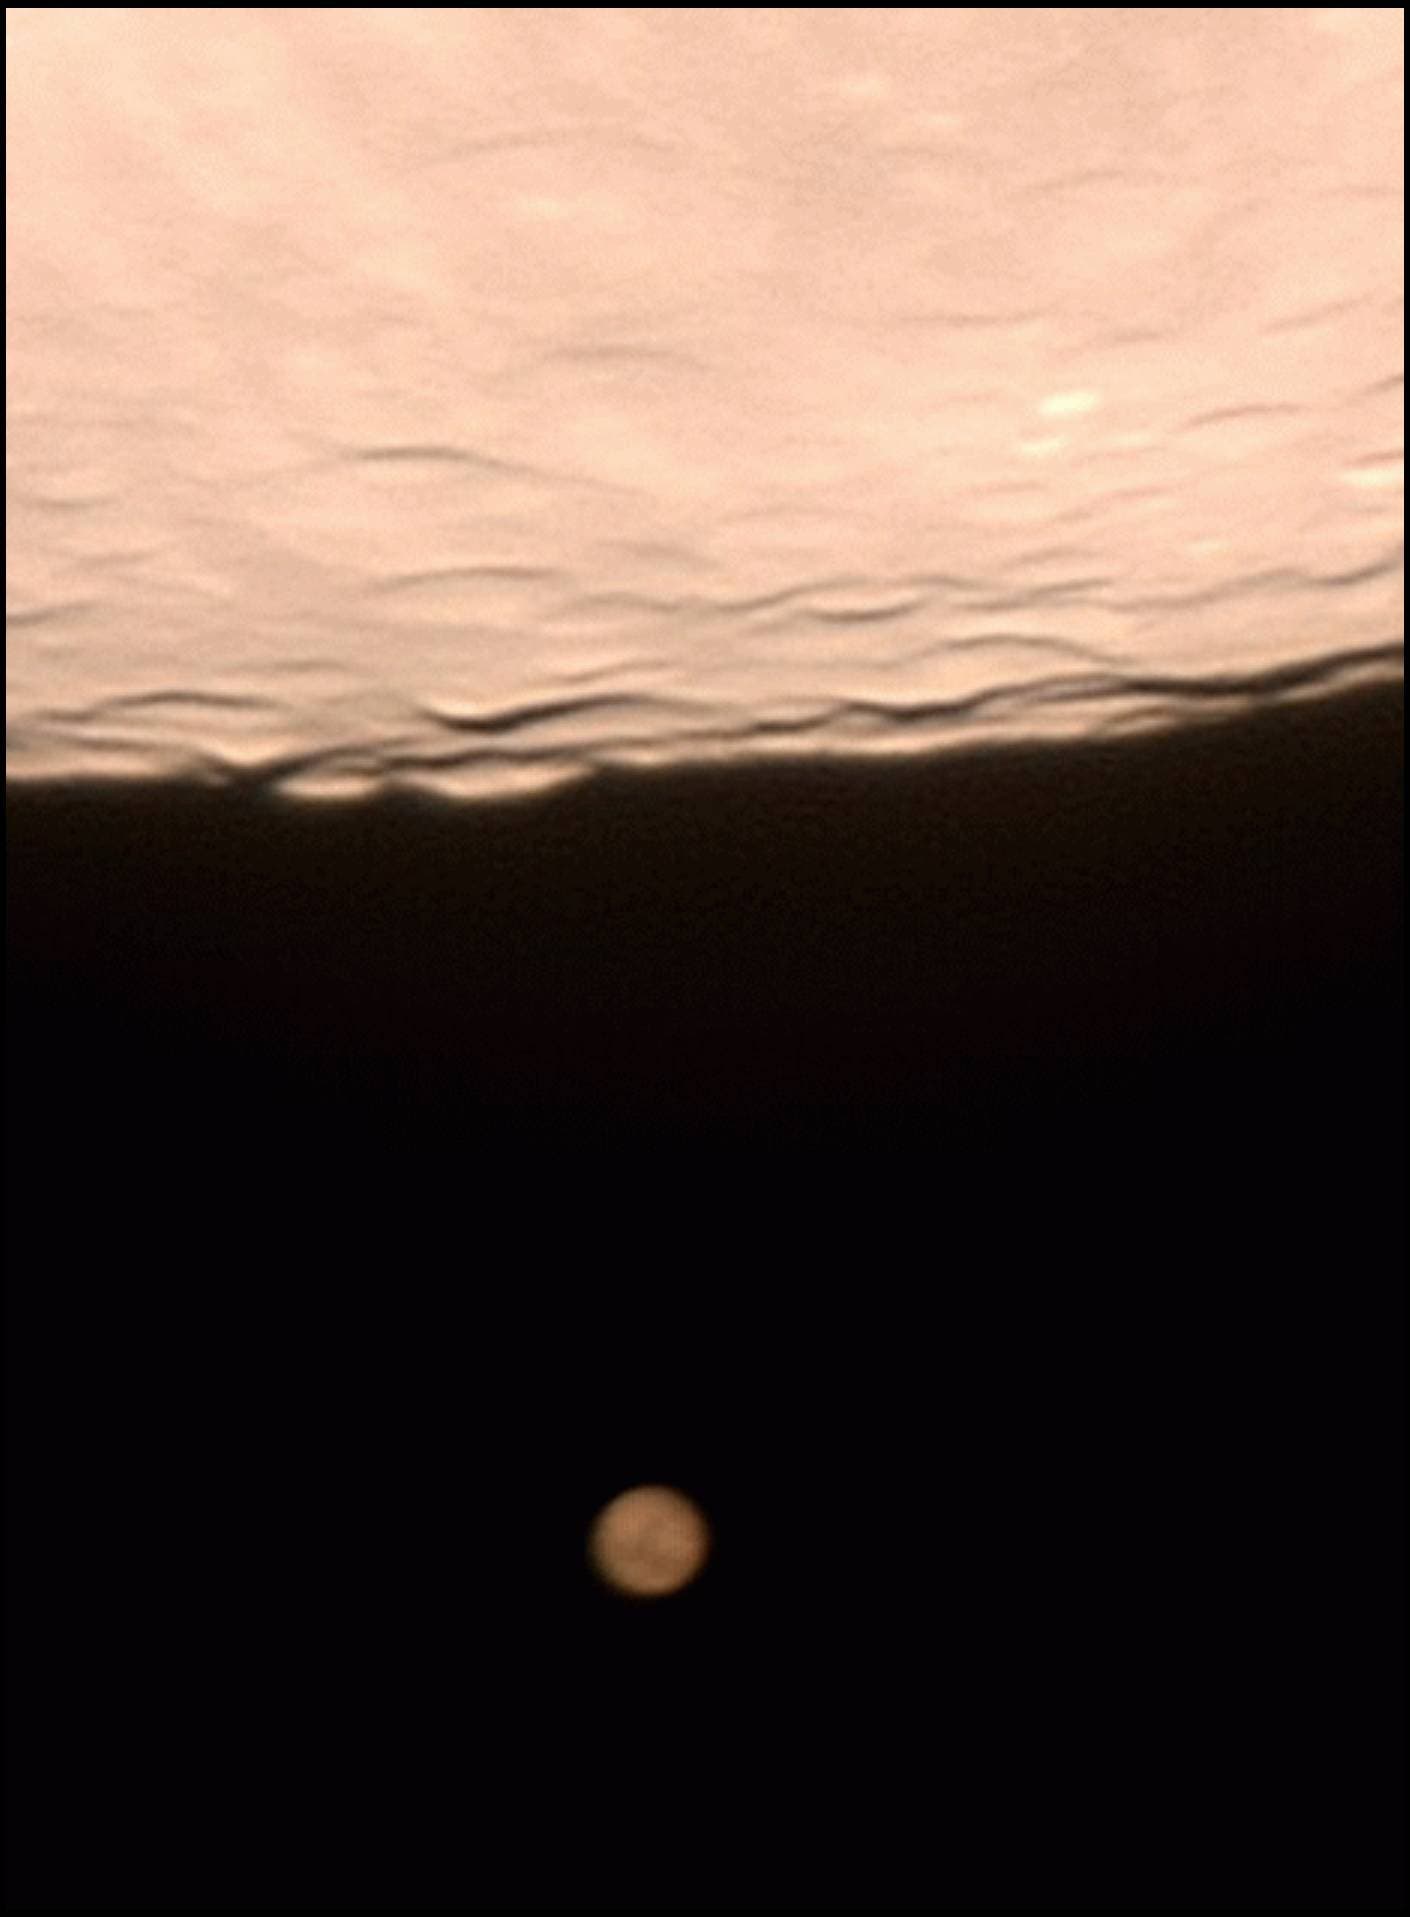 Enge Begegnung von Mars und Mond am 24.12.2007